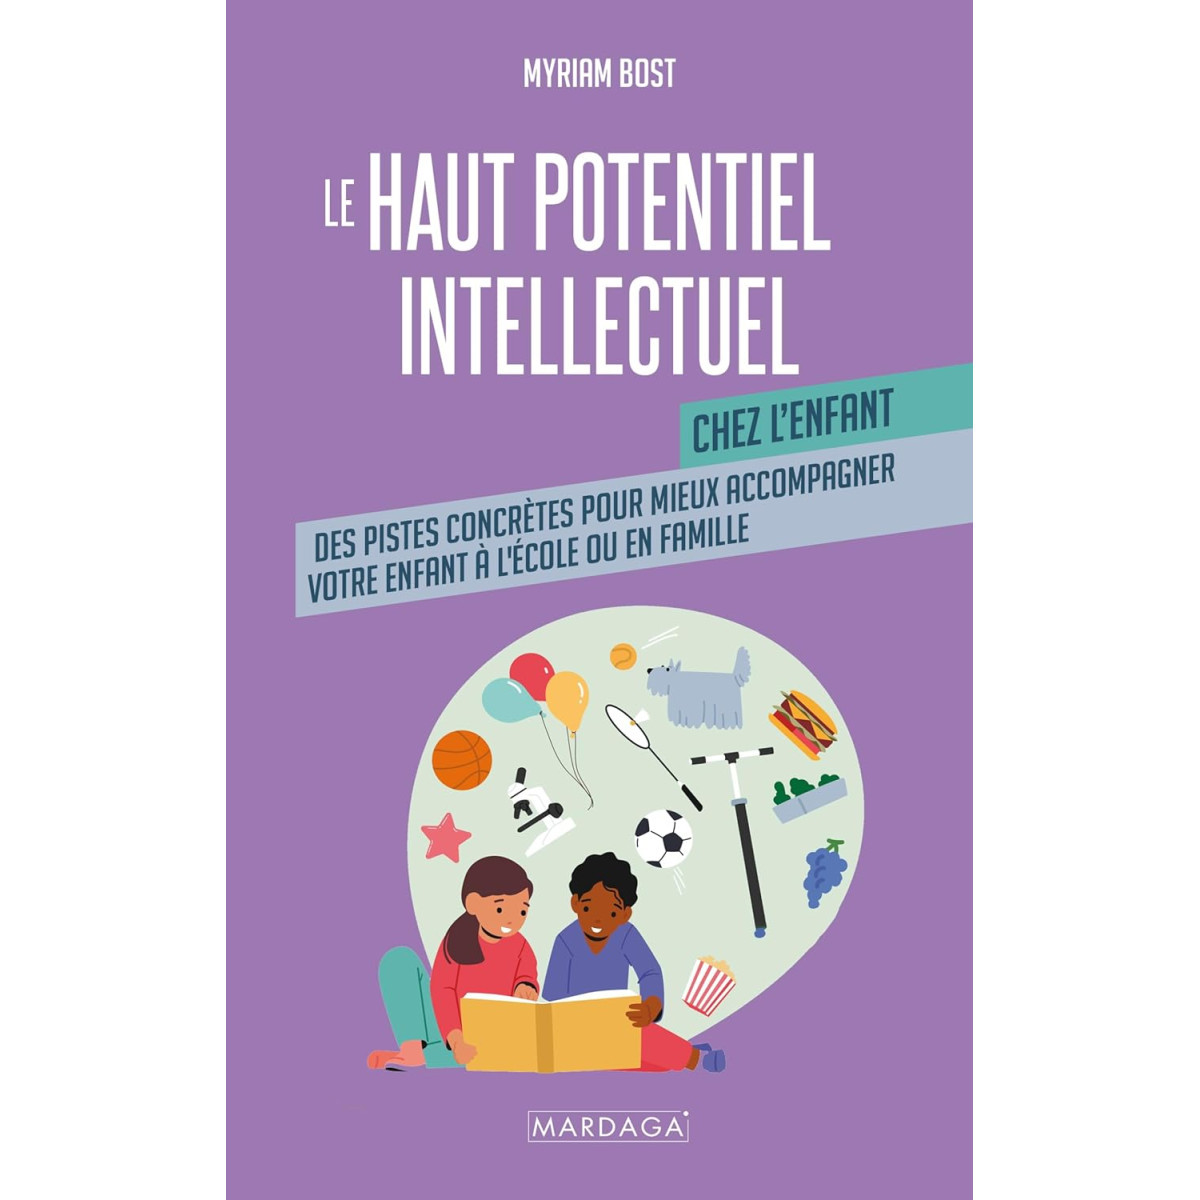 Le haut potentiel intellectuel chez l'enfant: Un guide pratique pour mieux accompagner votre enfant à l’école et en famille